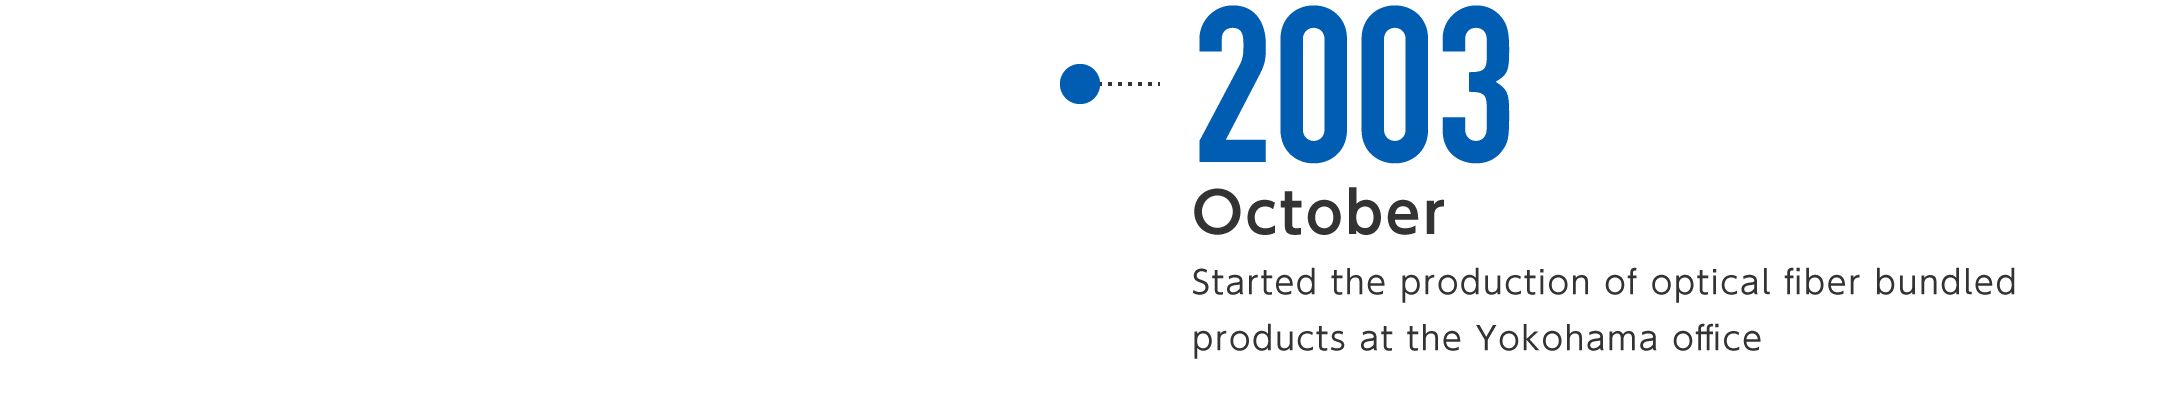 2003年10月-横浜事業所にてバンドル光ファイバ製品の製造を開始